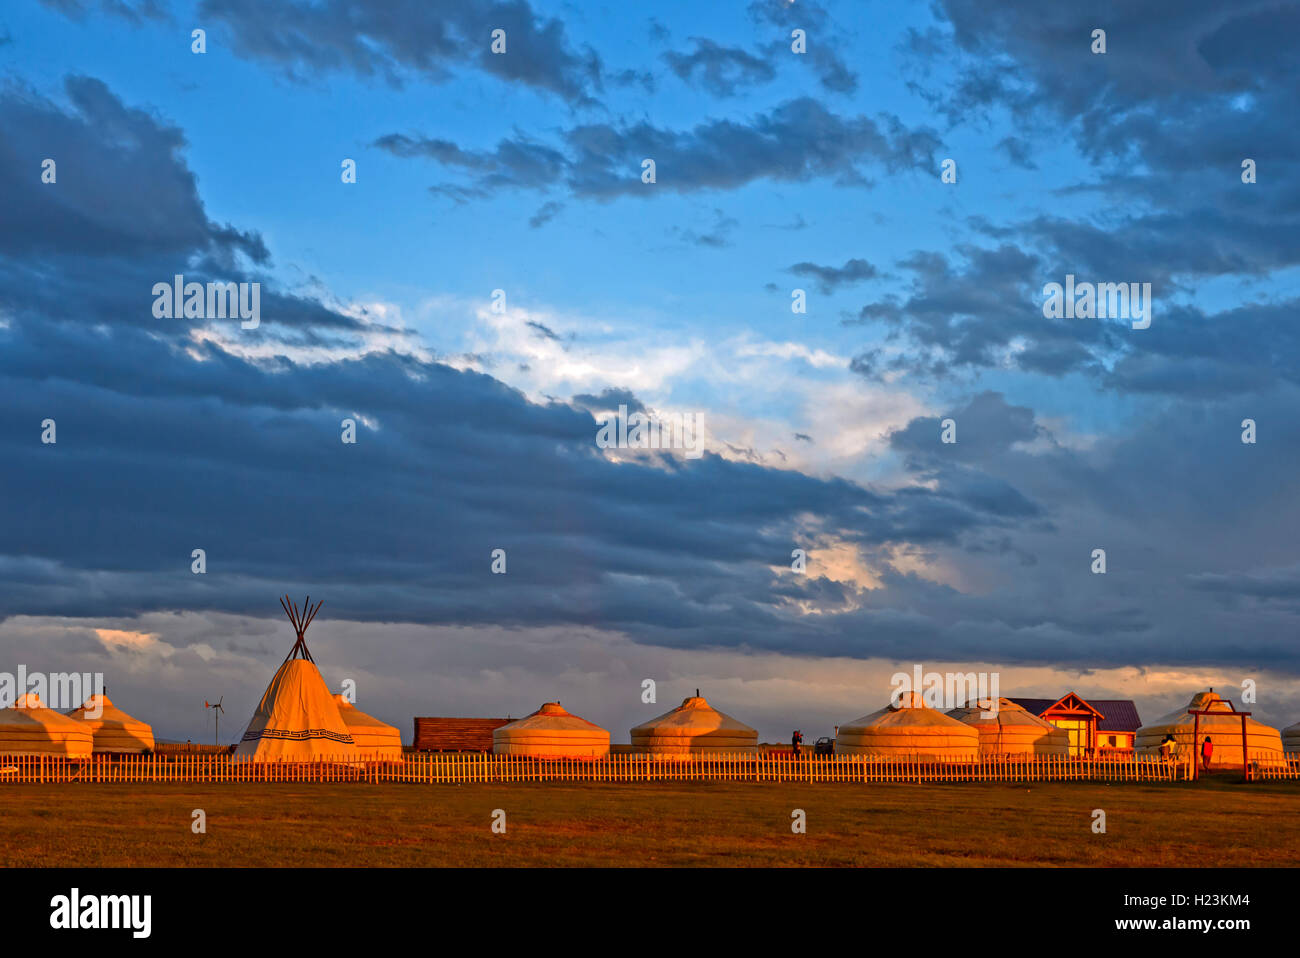 Im Jurten Khatan Ugii Tourist Camp Lager zum Sonnenuntergang am Ogii Nuur, voir Mongolei Banque D'Images